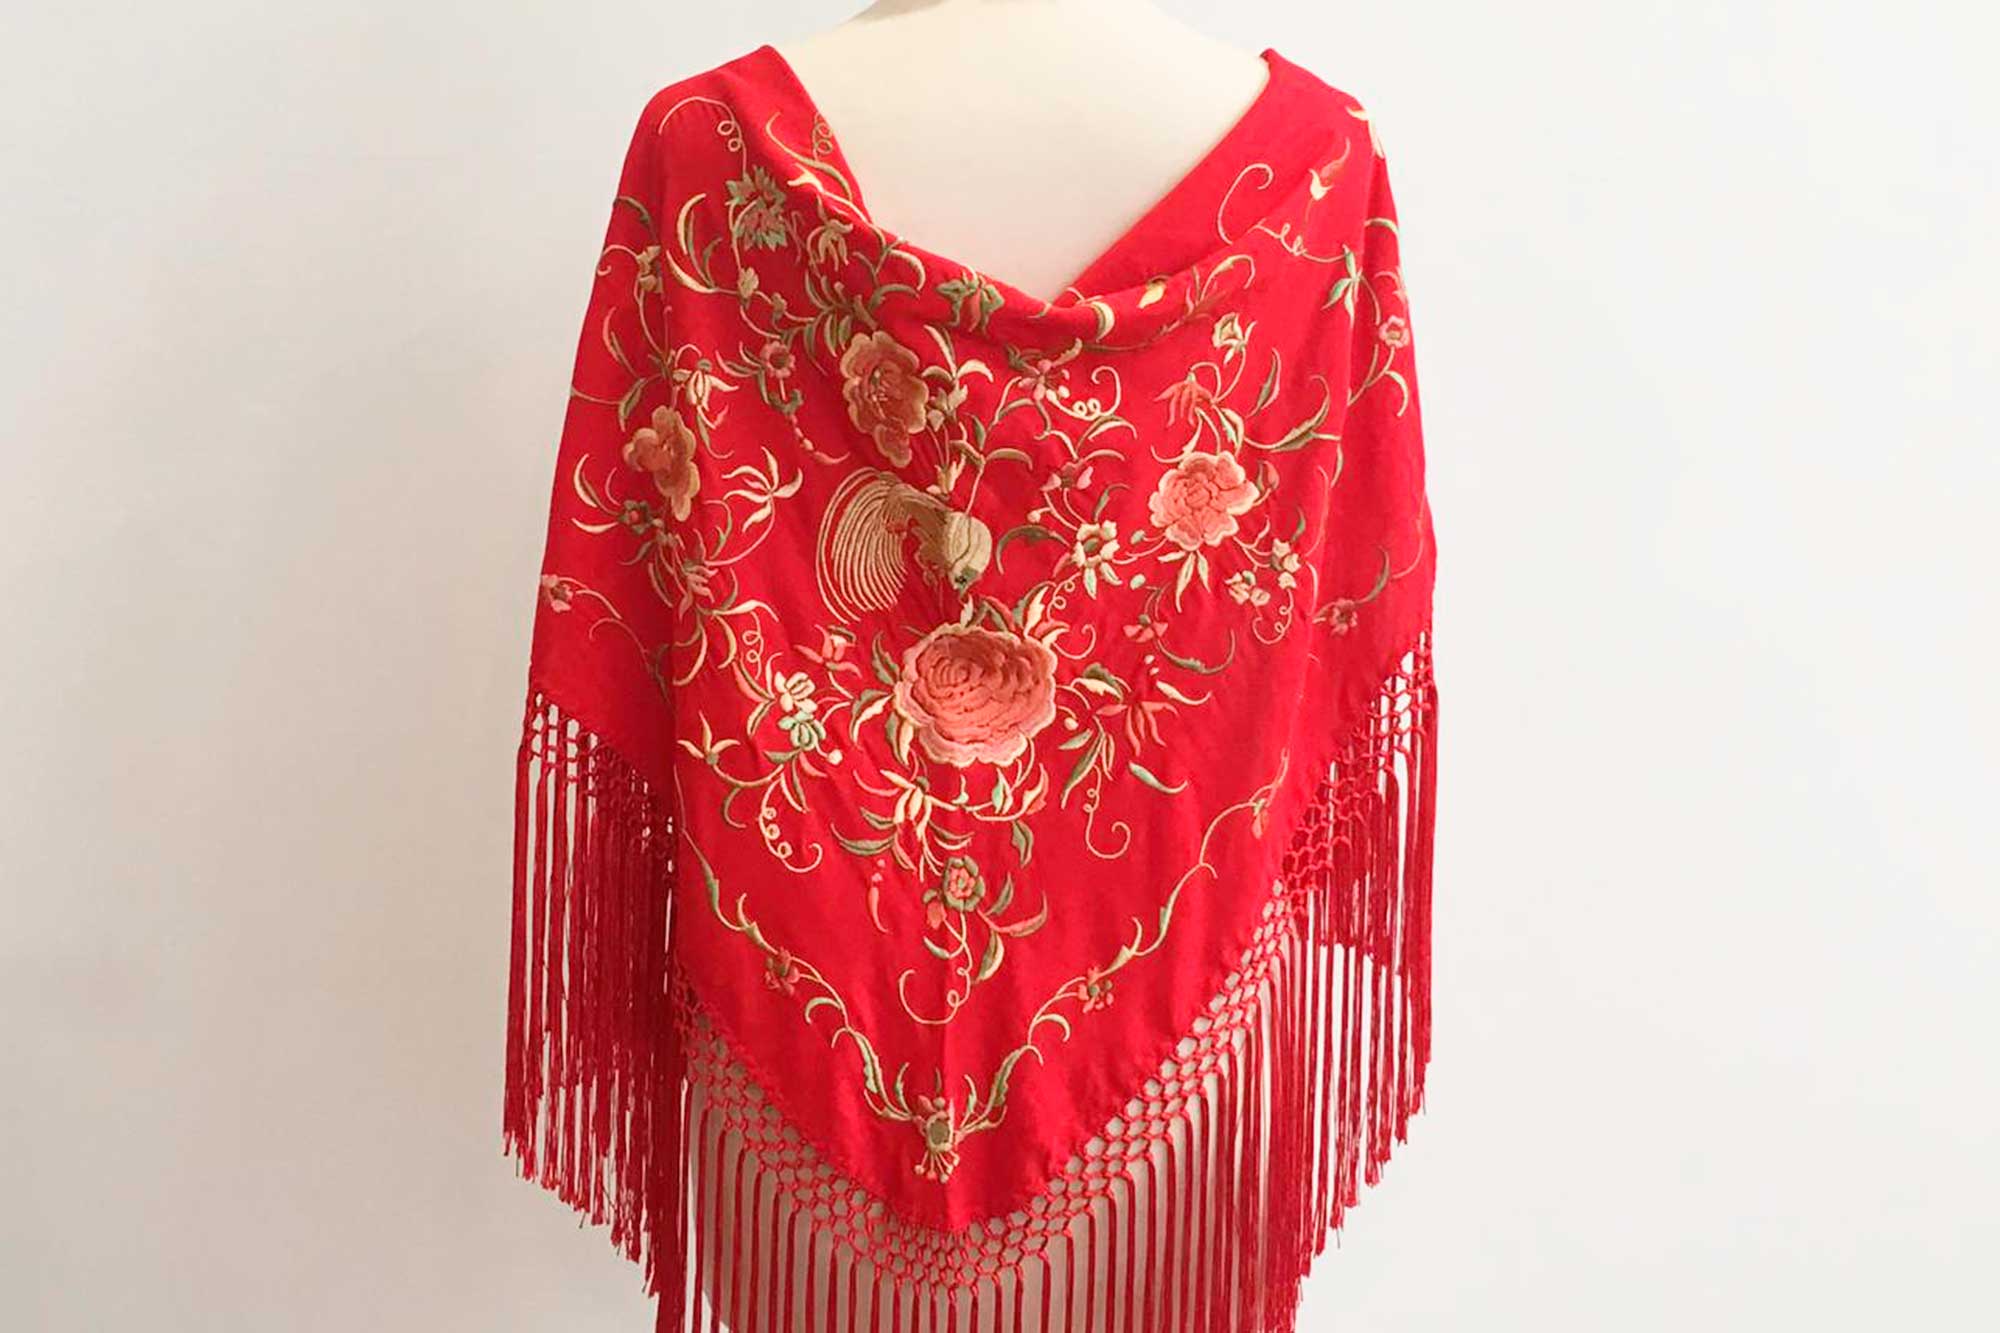 mantón bordado, mantoncillo, flamenca, complementos de flamenca, flecos de seda